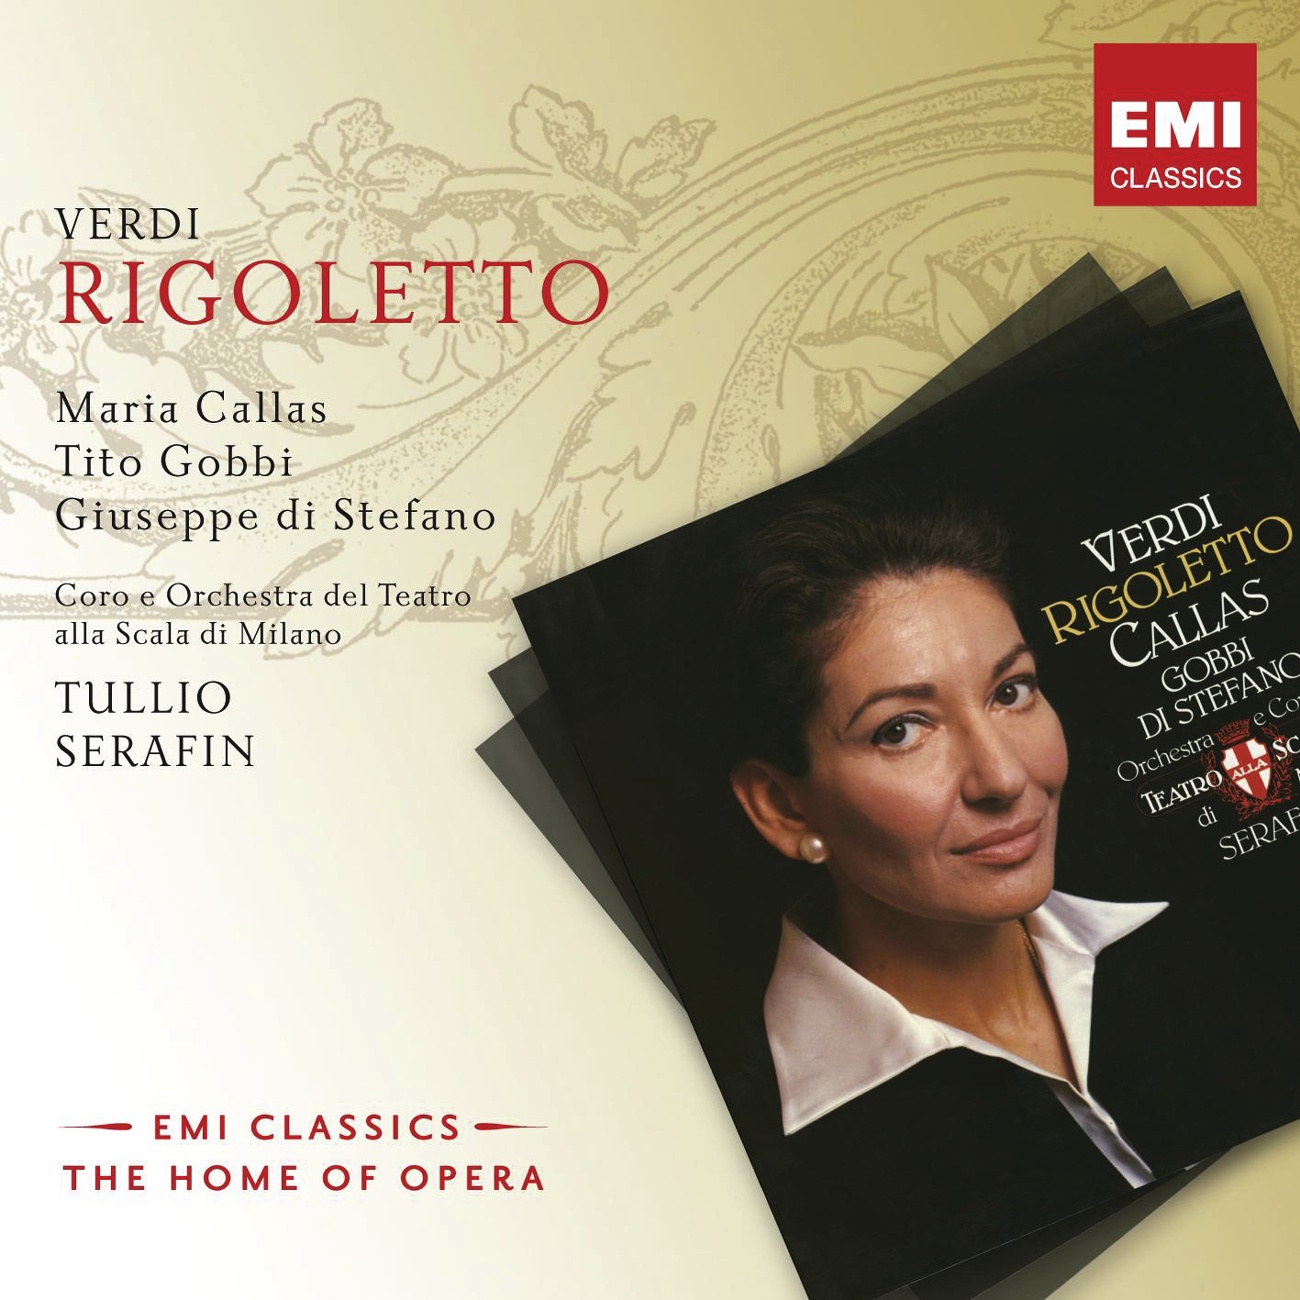 Rigoletto (1997 Digital Remaster), Act 3: Venti scudi hai tu detto? (Rigoletto/Sparafucile/Duca/Maddalena/Coro)